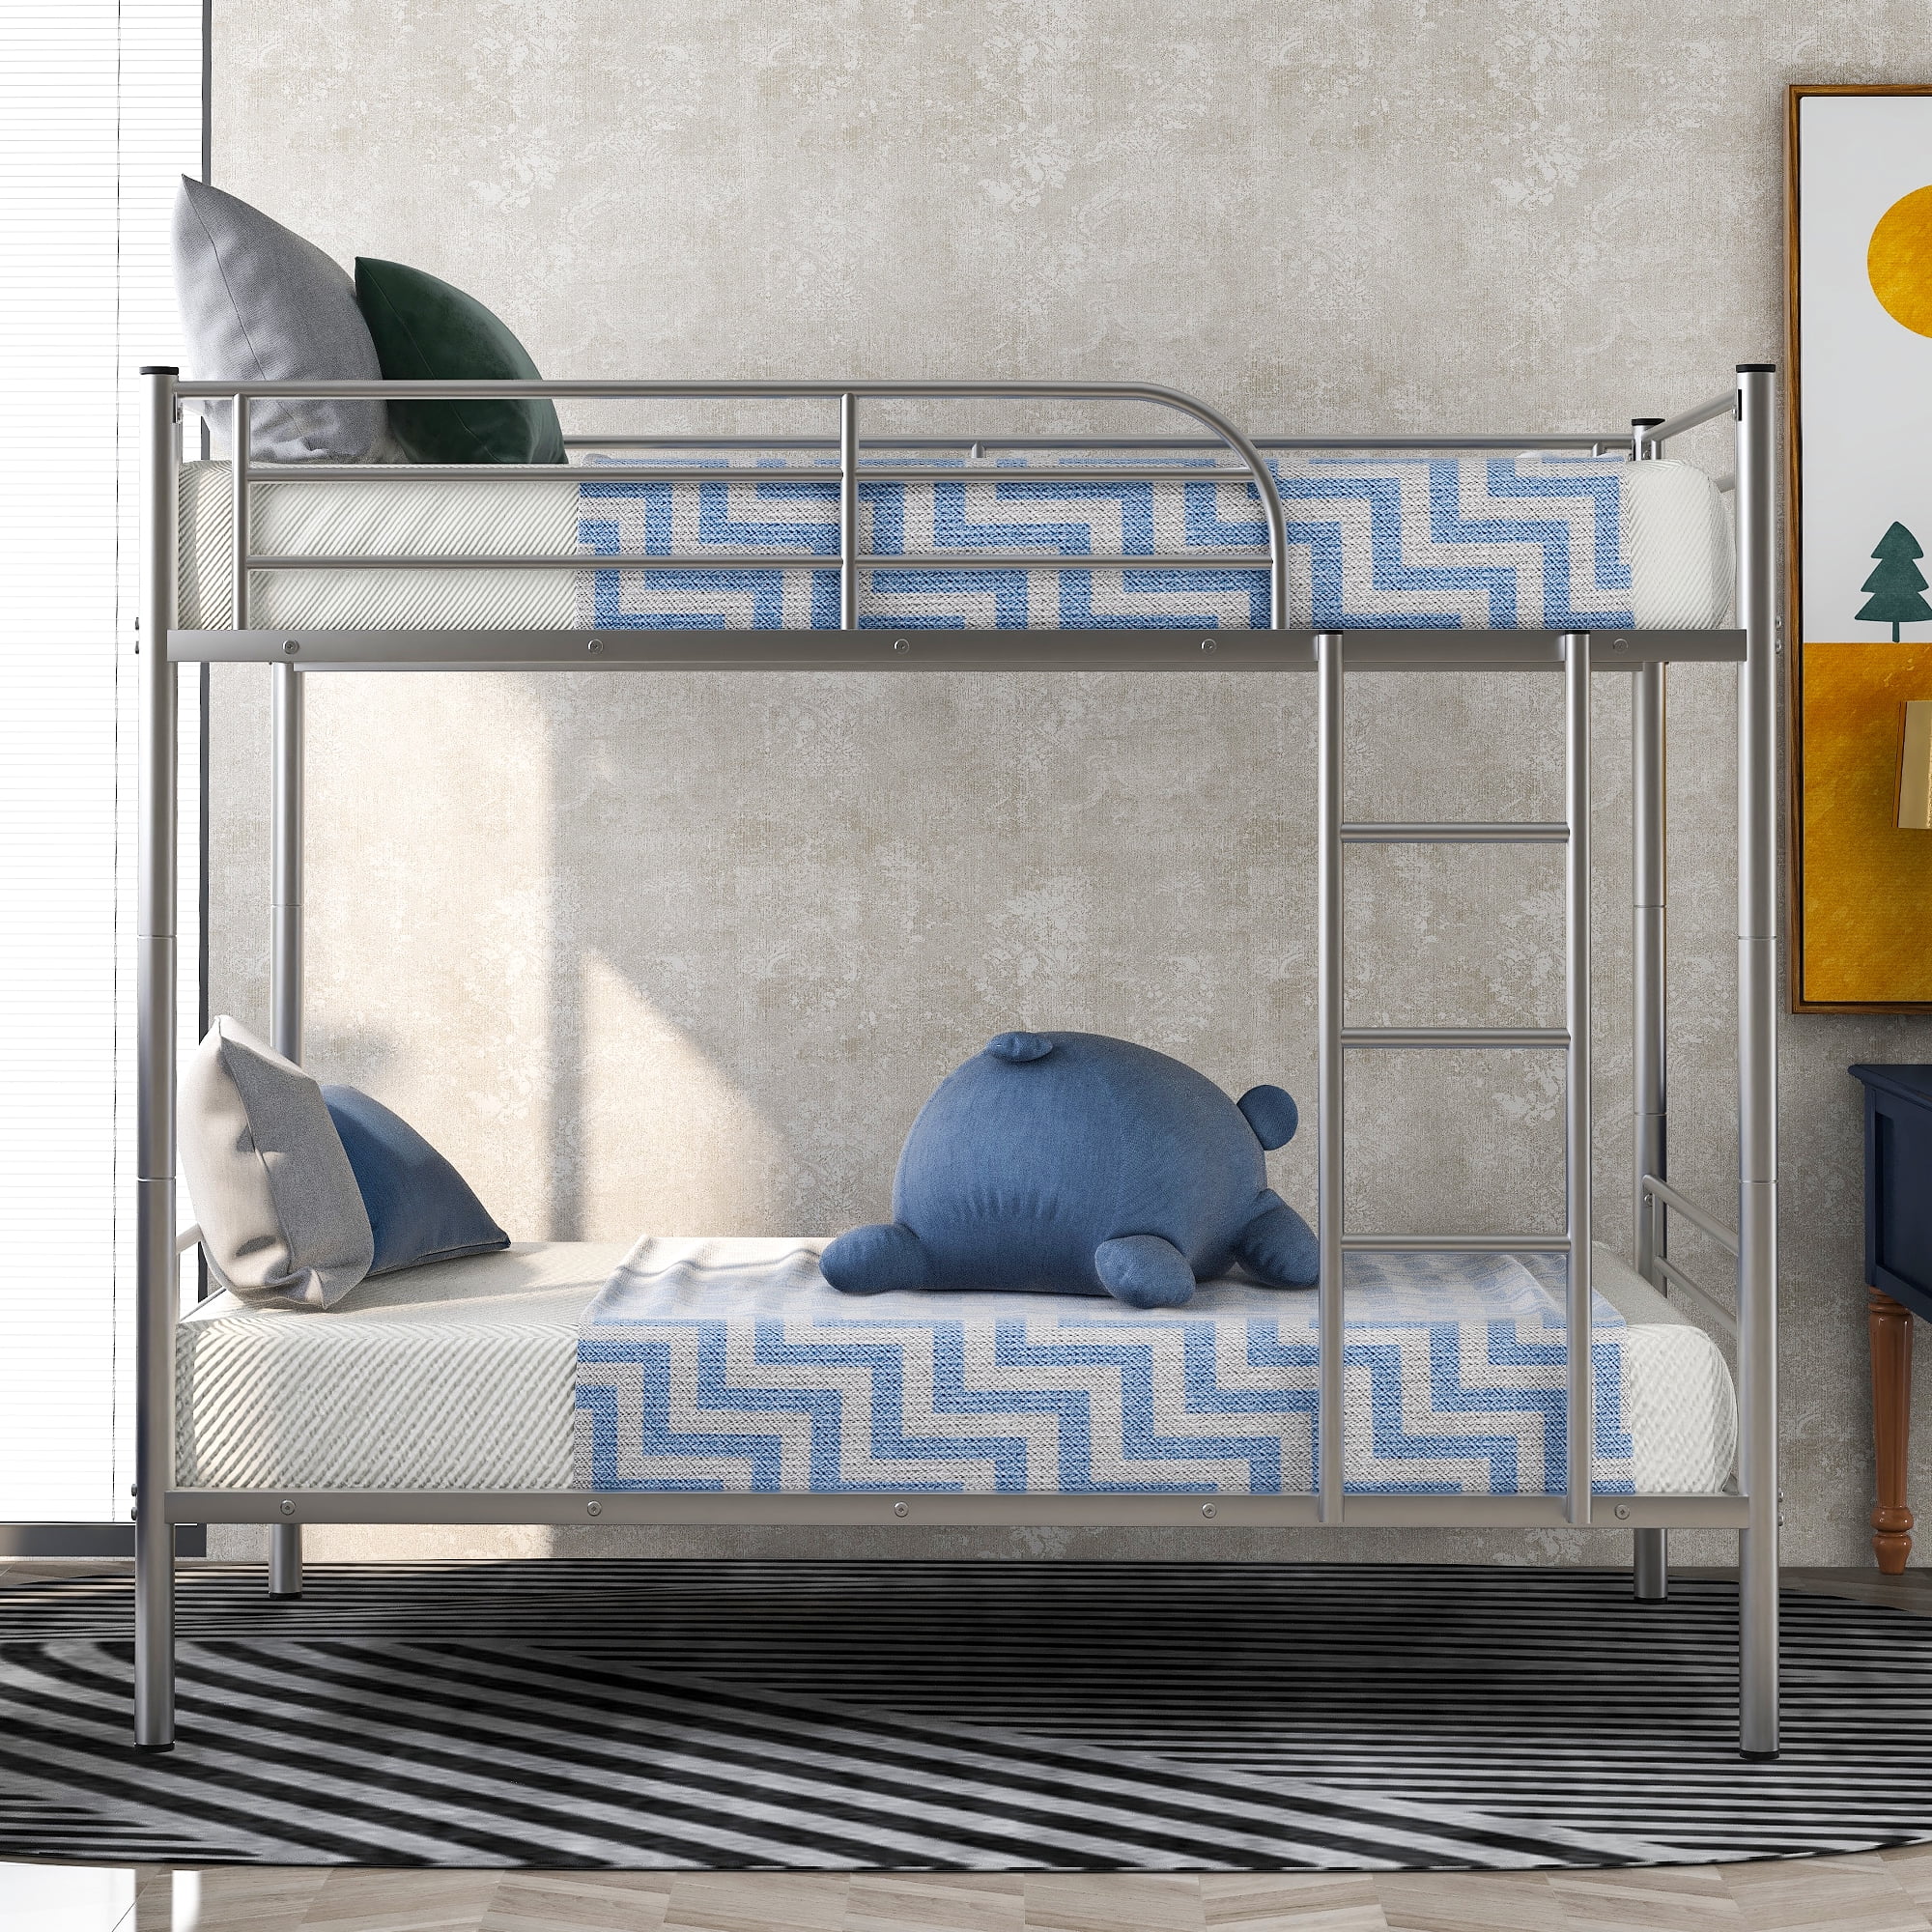 Details about   Twin Loft Bed Metal Bed Frame W/ Ladder For Boys Girls Teens Kids Bedroom Dorm 